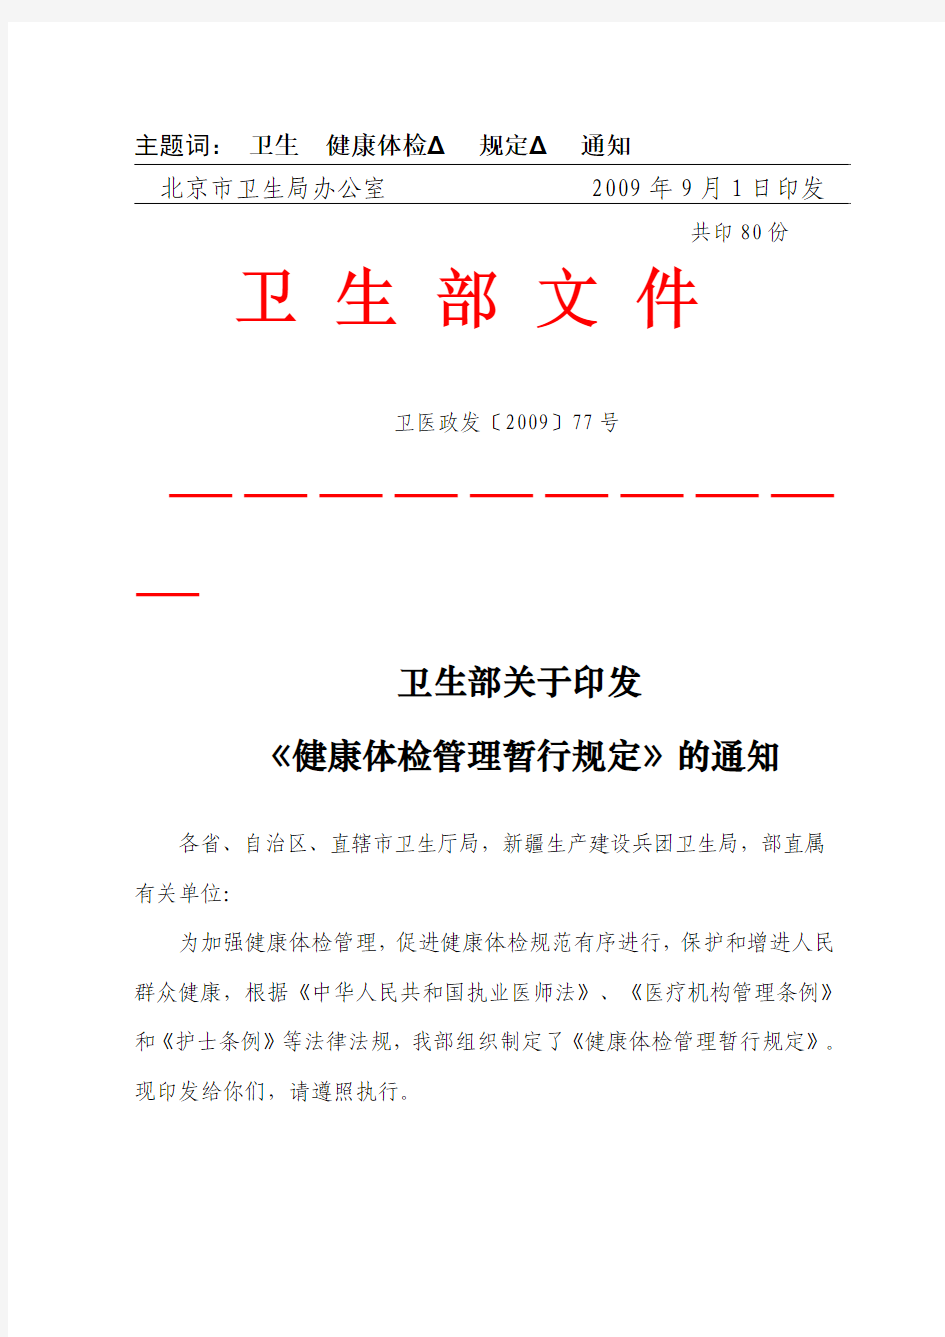 北京市卫生局转发卫生部关于印发《健康体检管理暂行规定》的通知